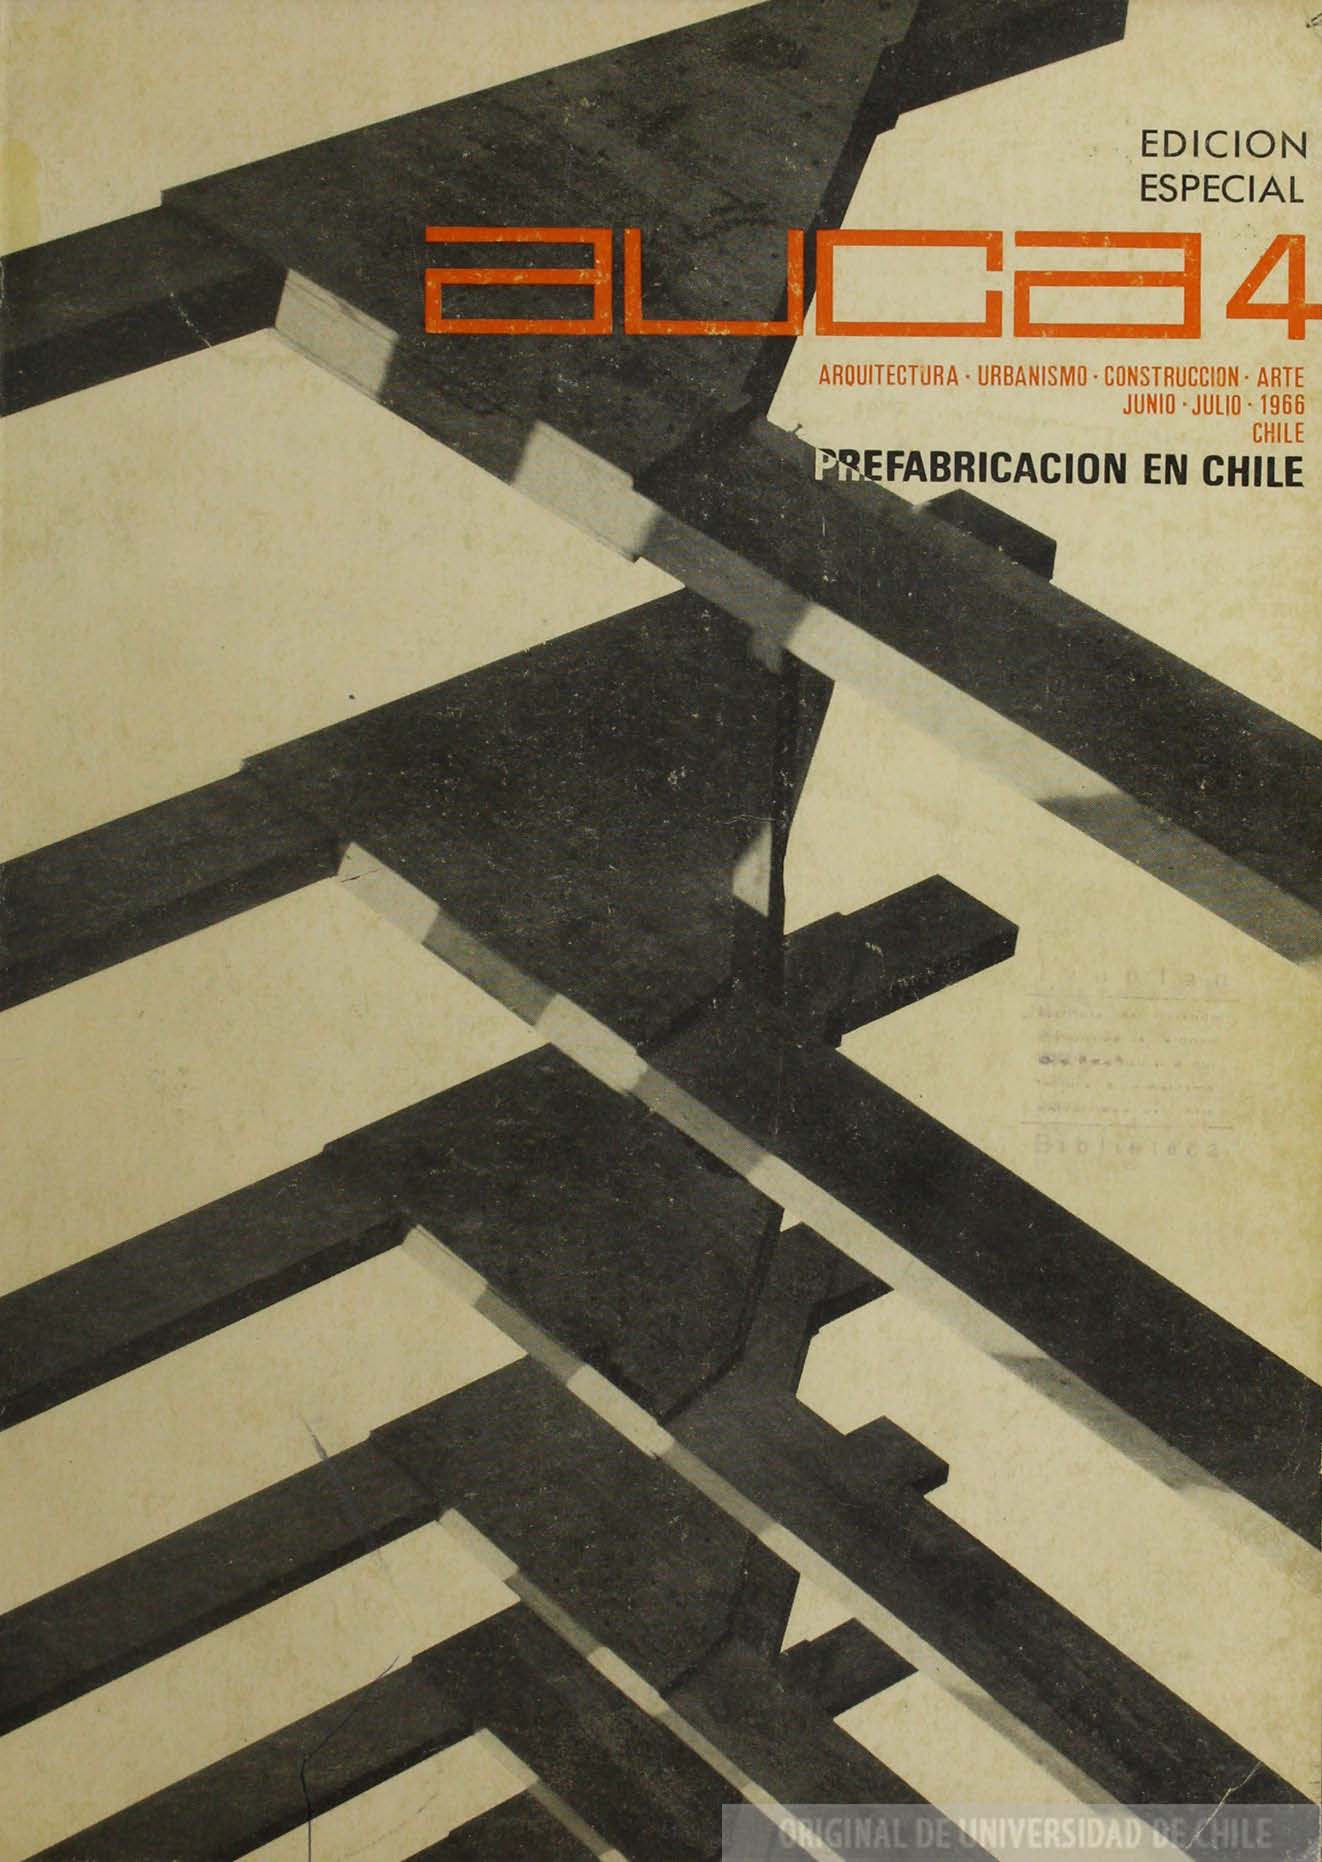 											Ver Núm. 4 (1966): Prefabricación en Chile
										